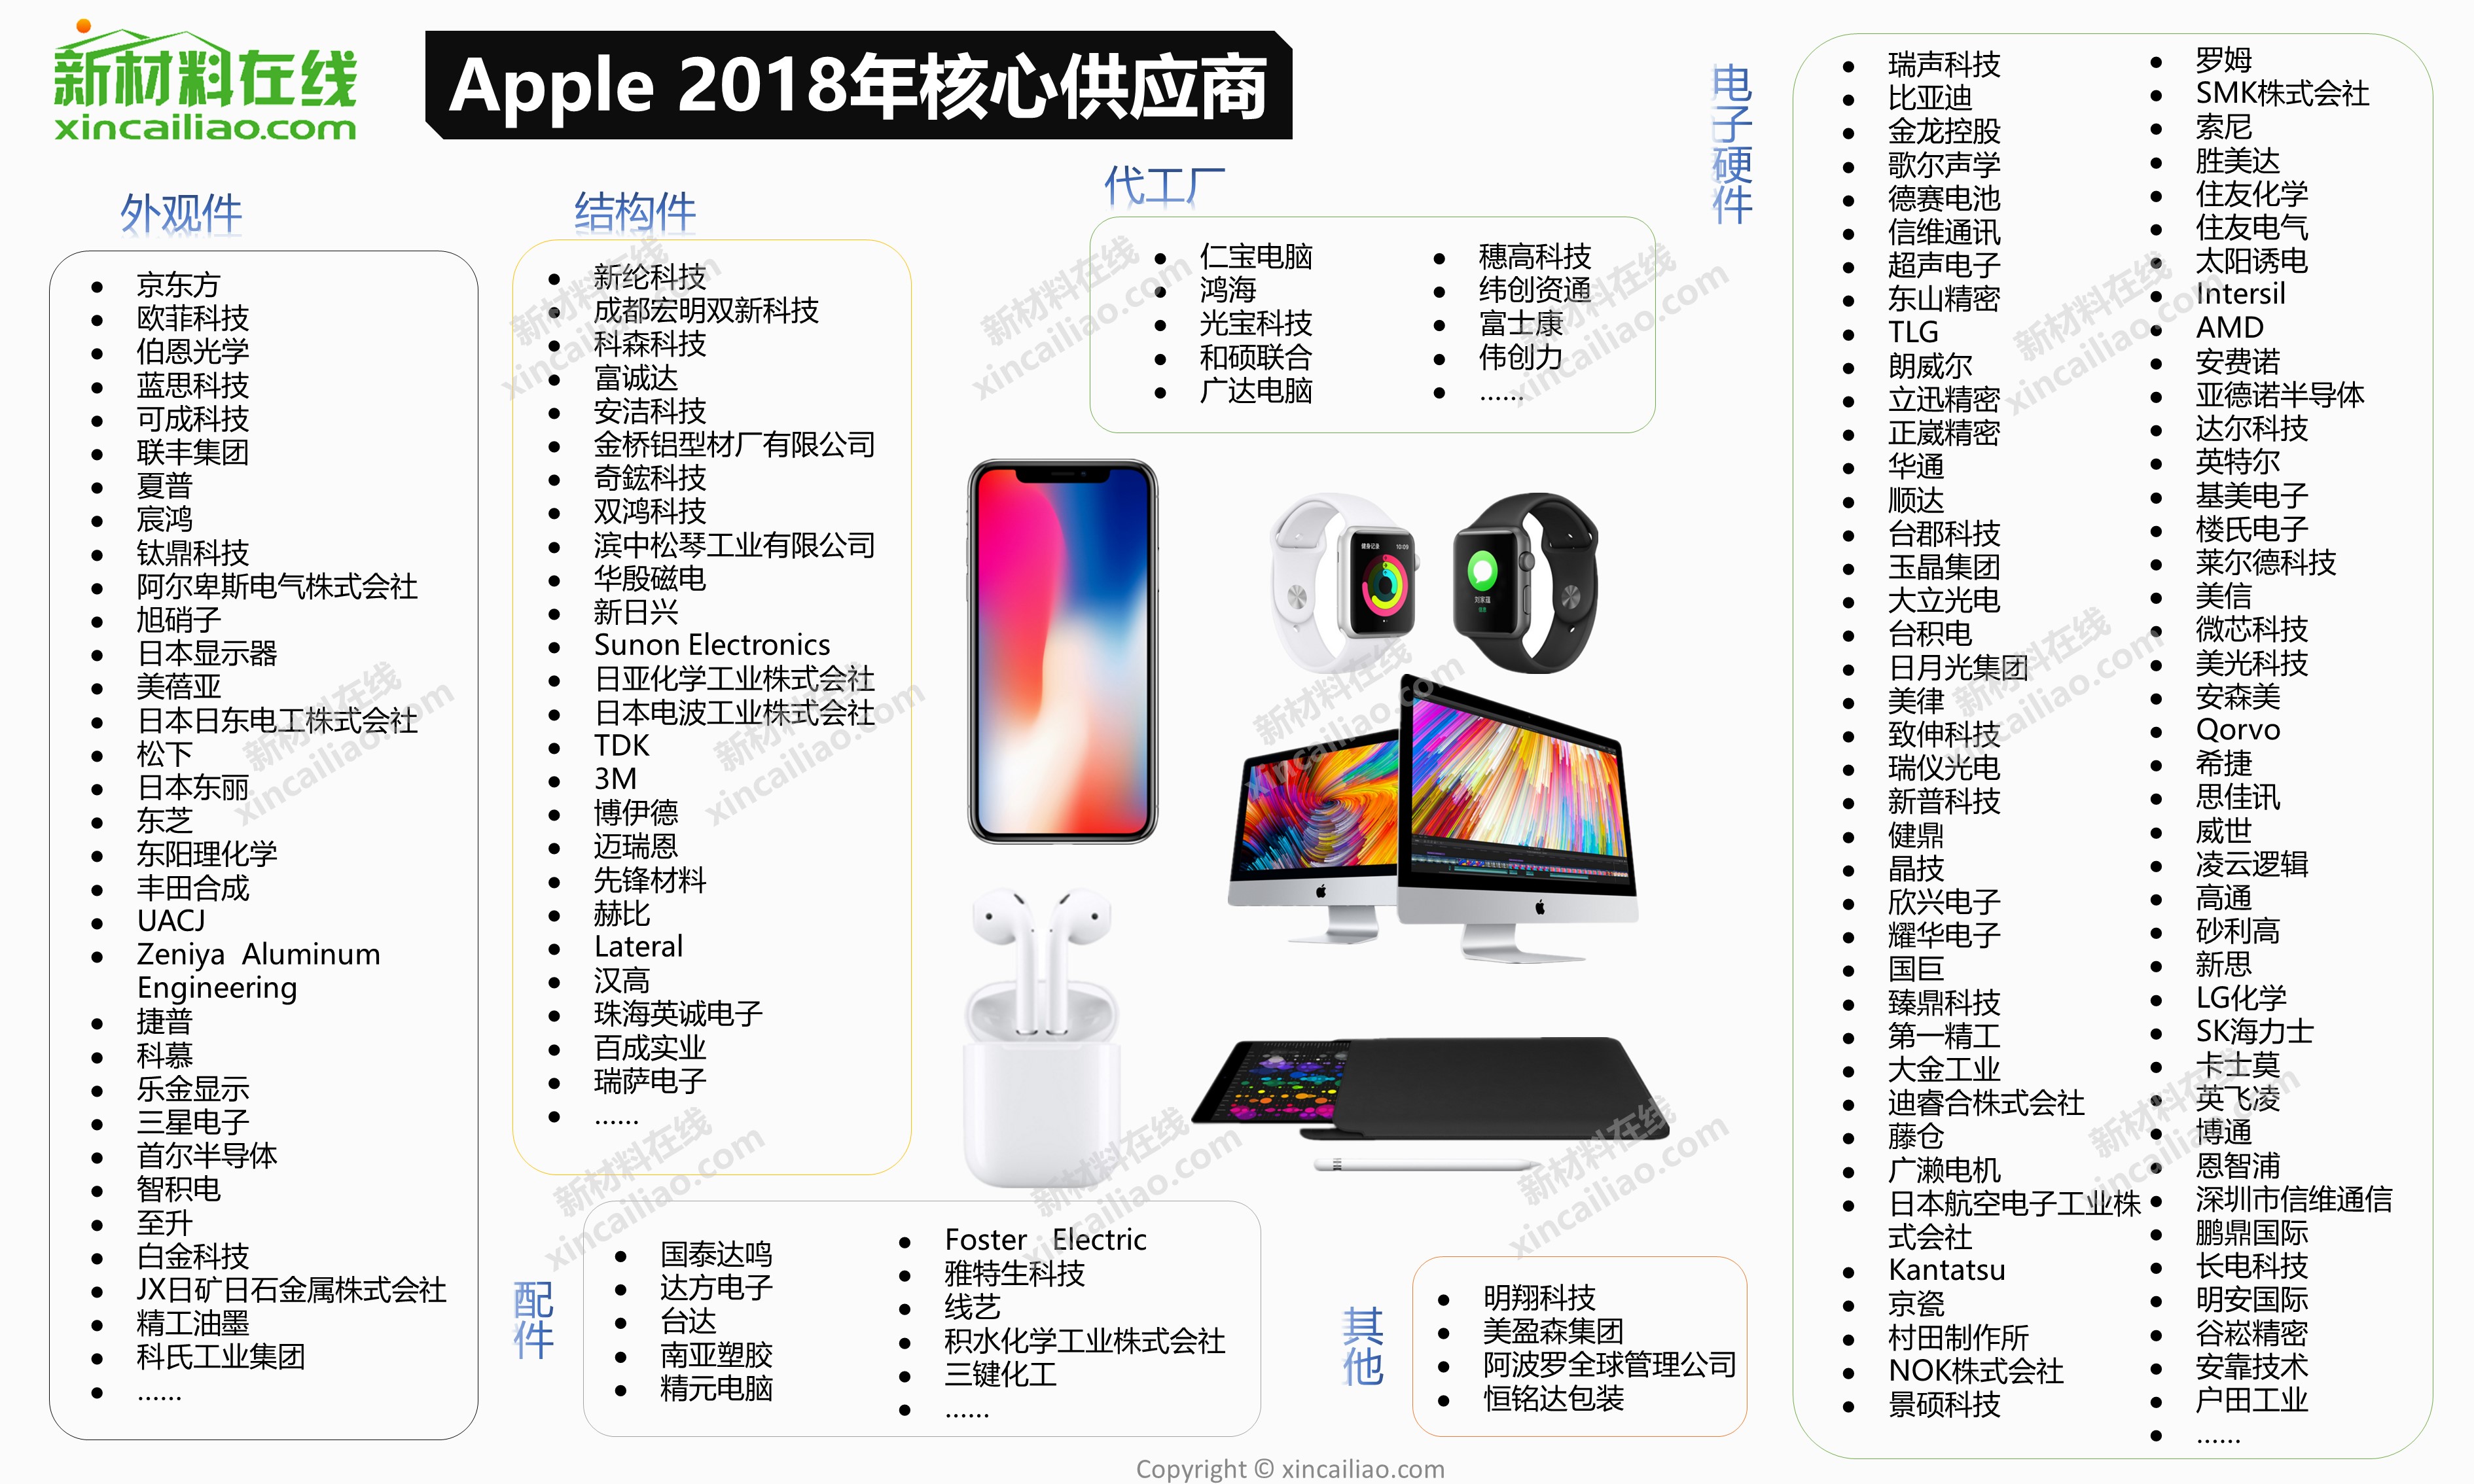 据新材料在线03统计,与2017年相比,中国入选apple核心供应商的企业